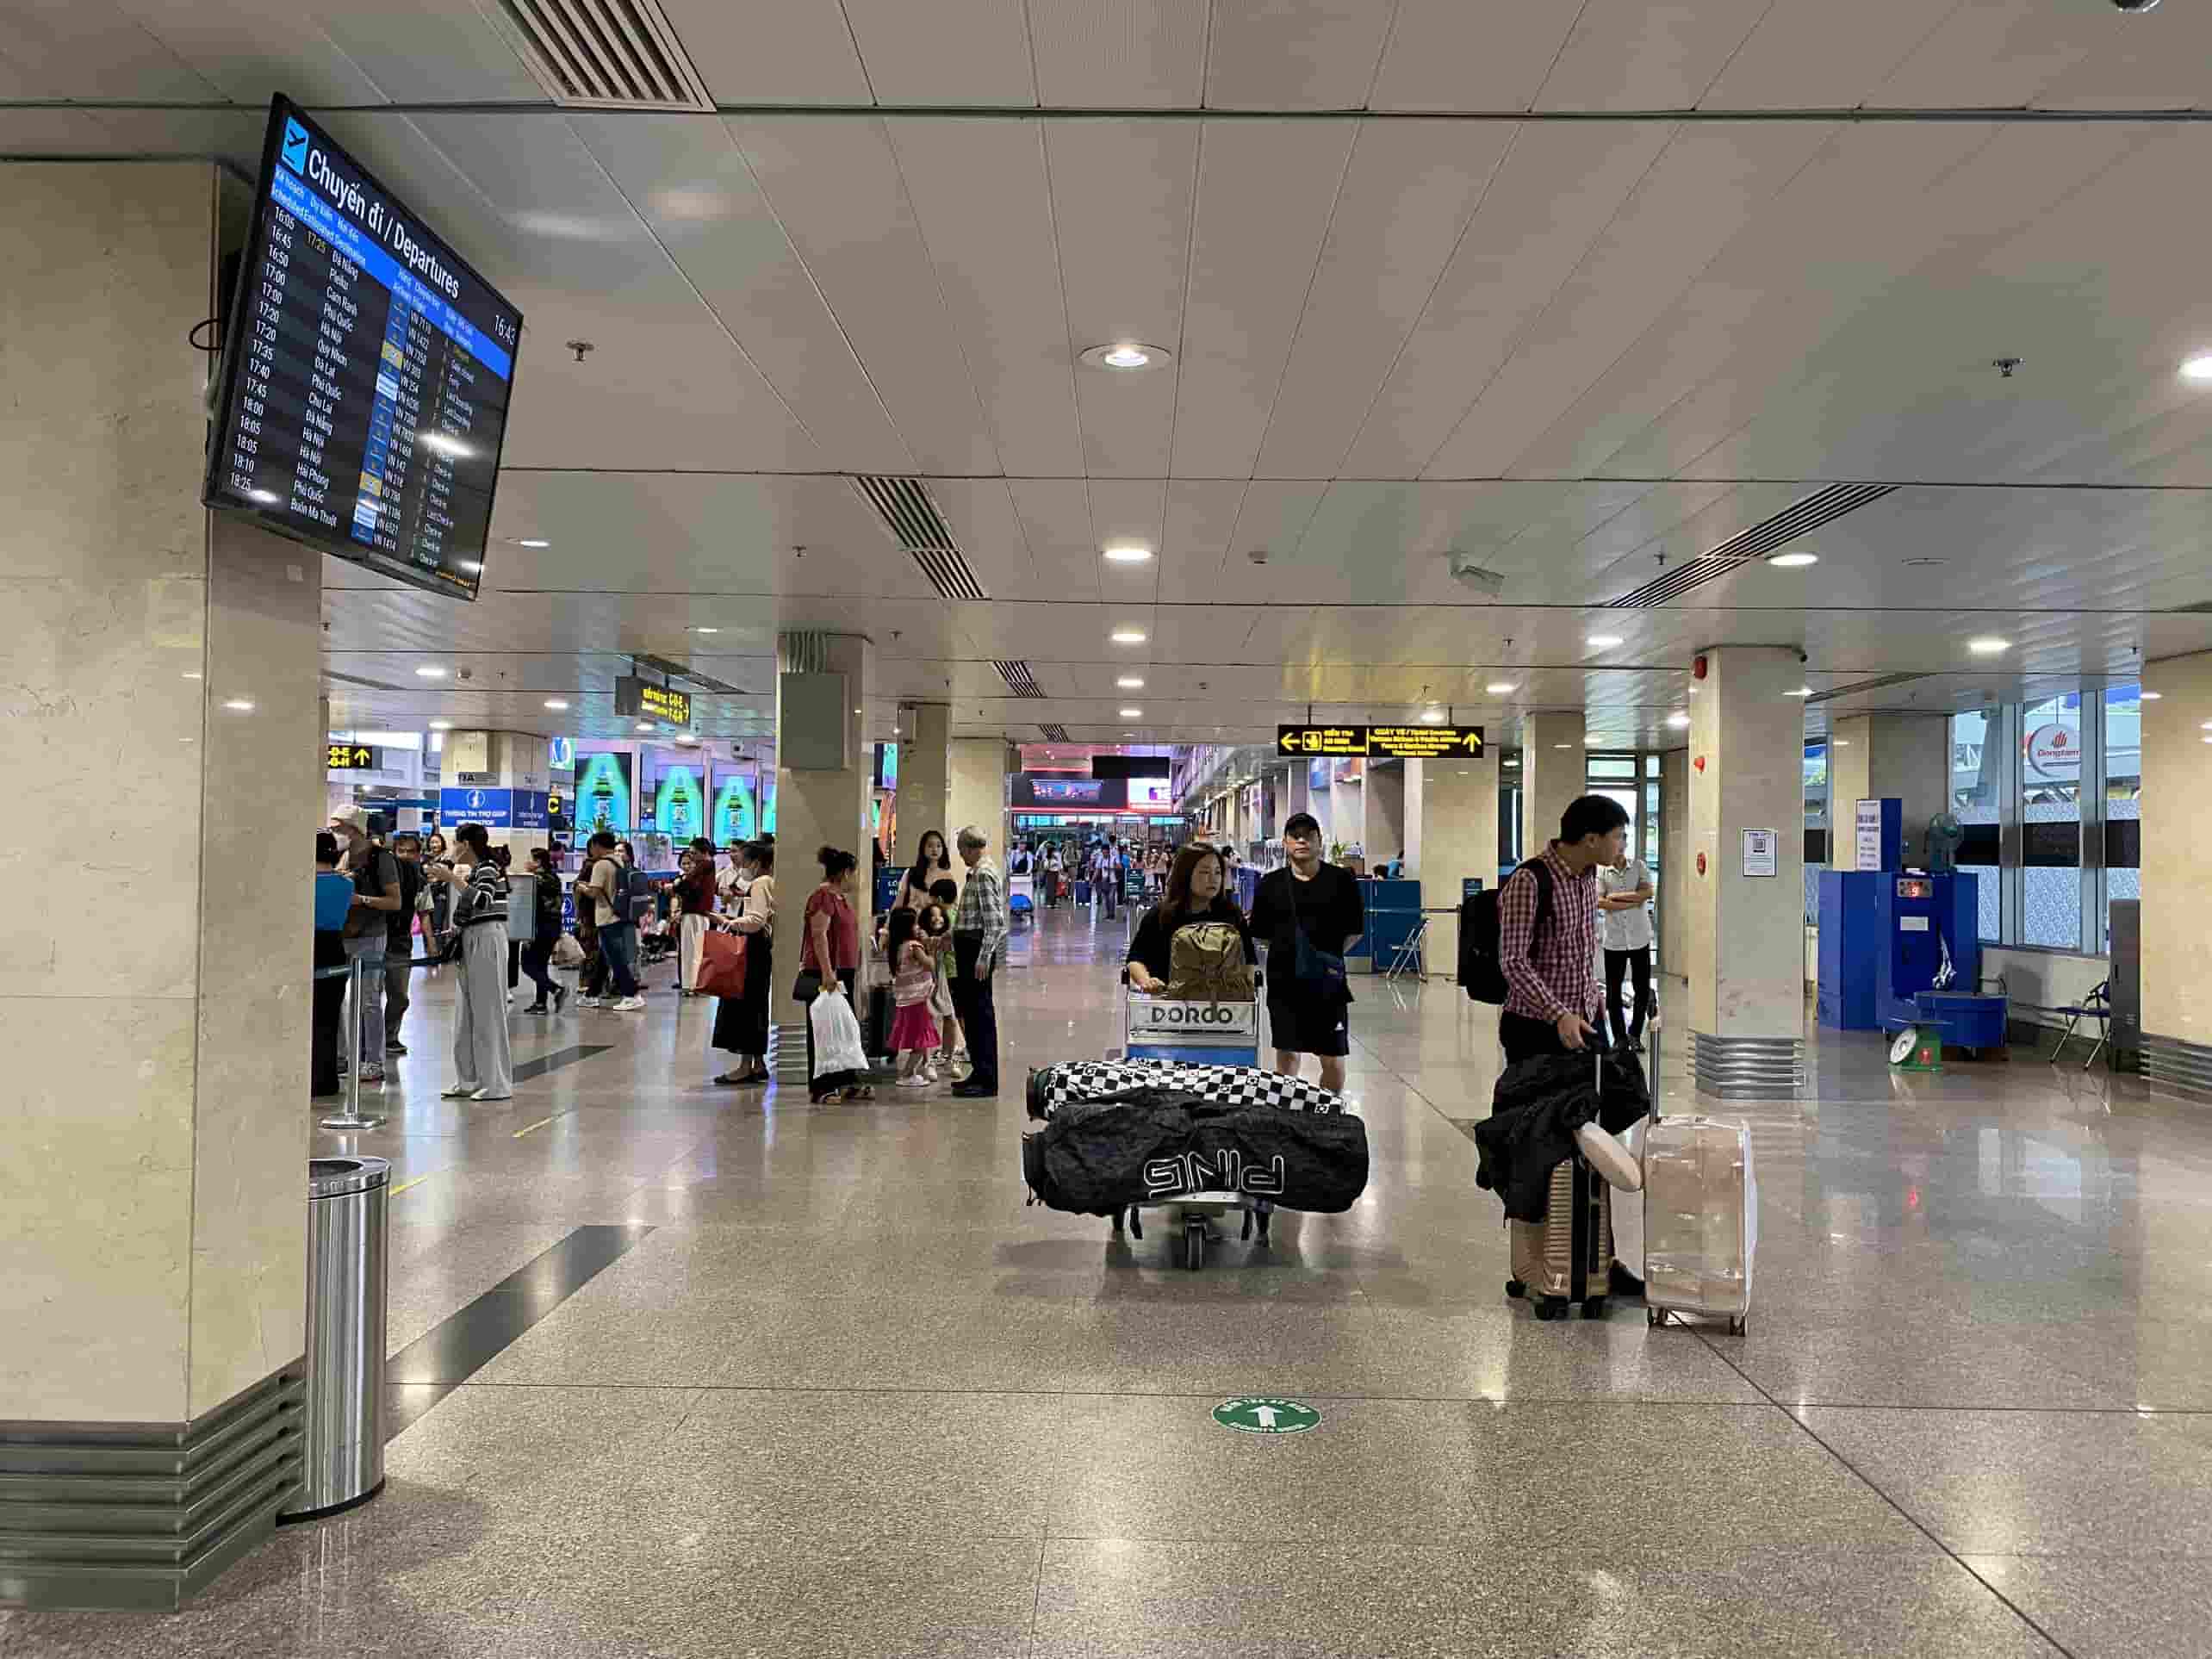 Ghi nhận tại ga quốc nội sân bay Tân Sơn Nhất cho thấy lượng khách đến sân bay vẫn chưa có dấu hiệu tăng mạnh như những dịp lễ trước đây. Khu vực sảnh của ga đi vẫn vô cùng thông thoáng.